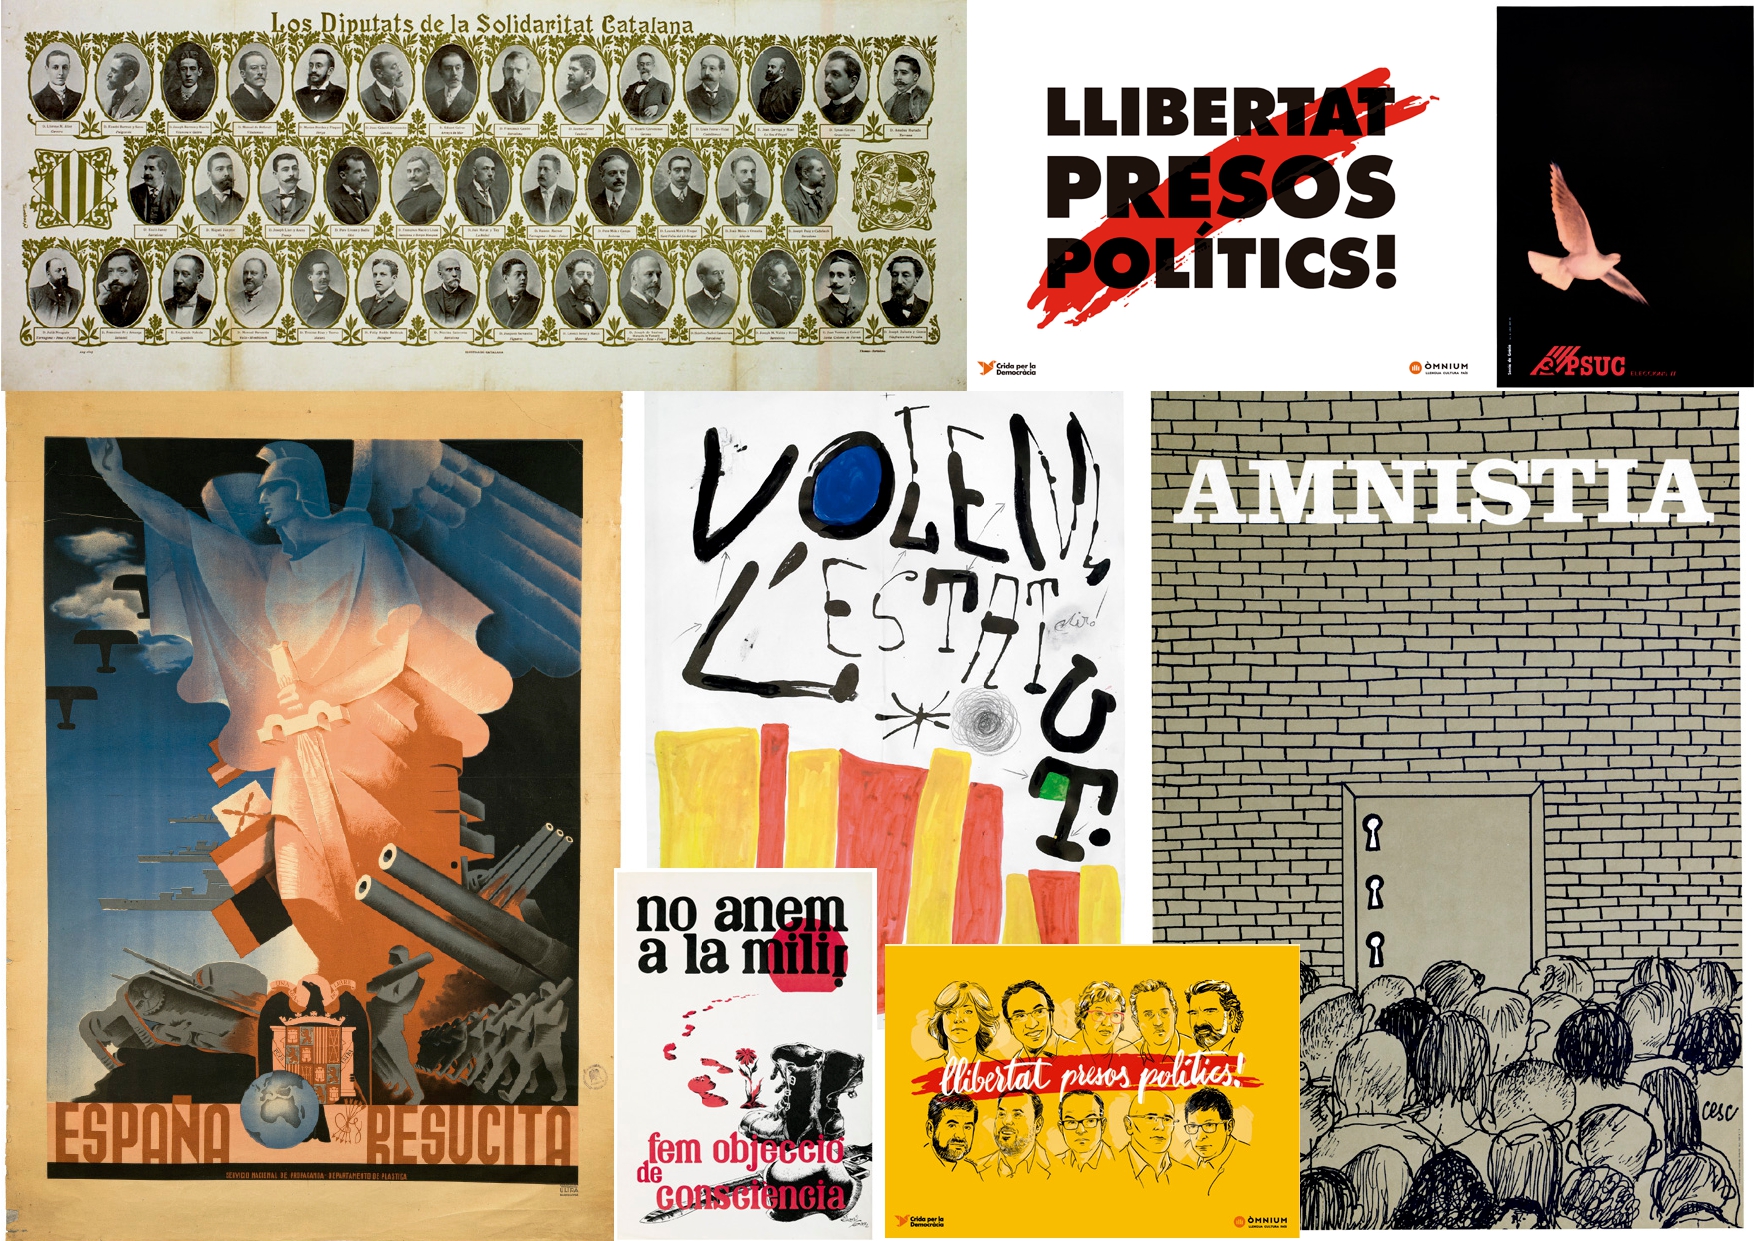 Cartells catalans. Propaganda política i reivindicació nacional 1894-2018